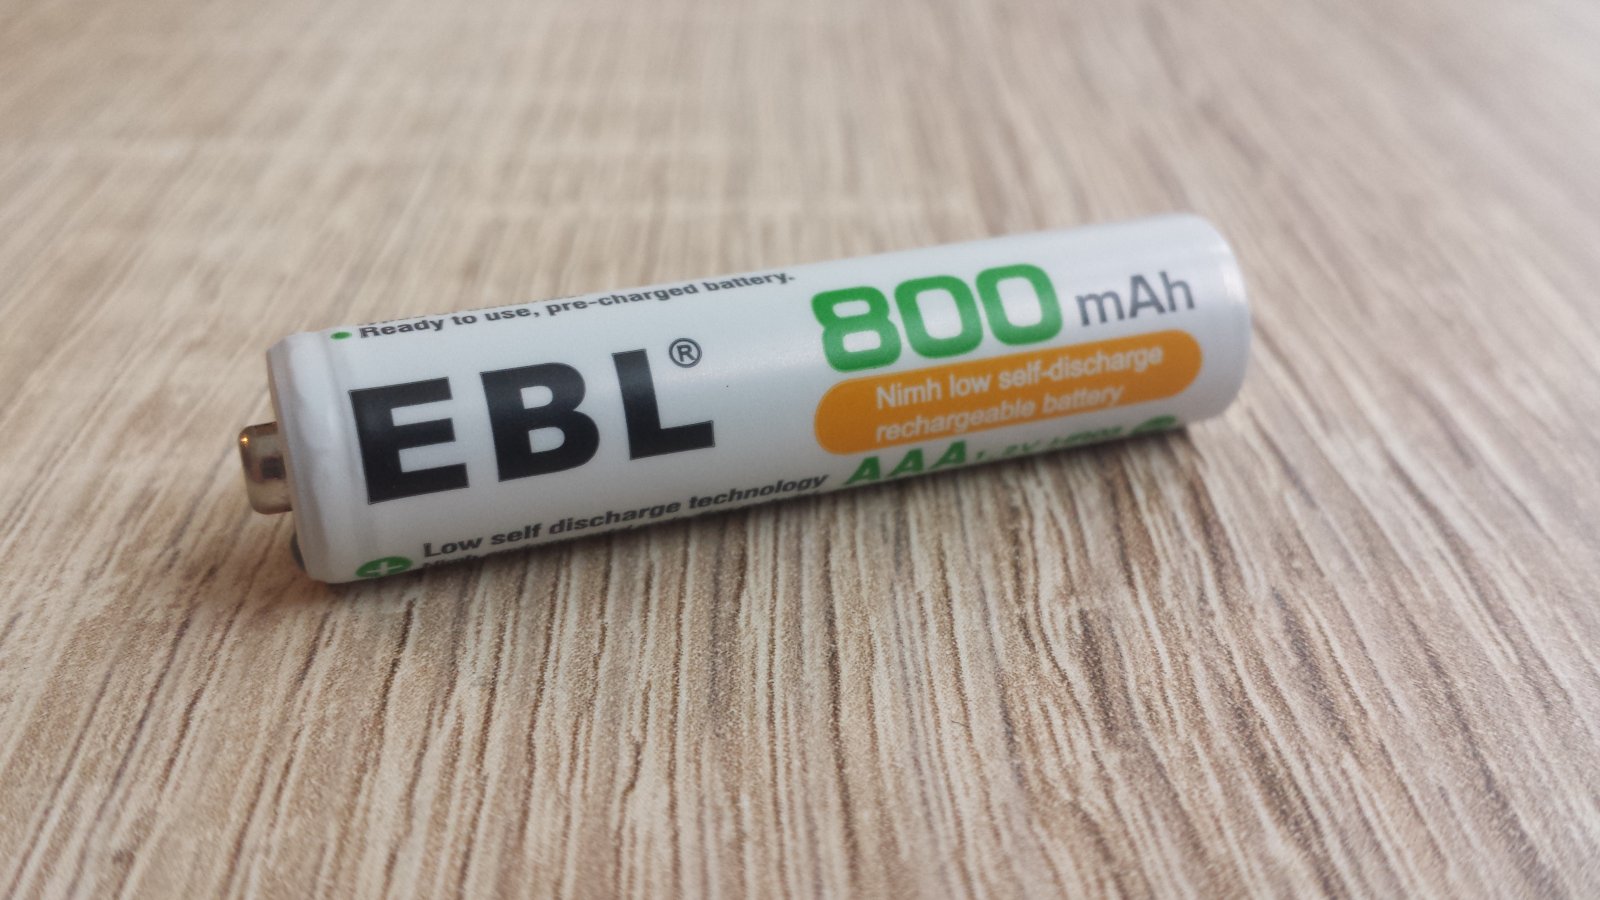 EBL 800